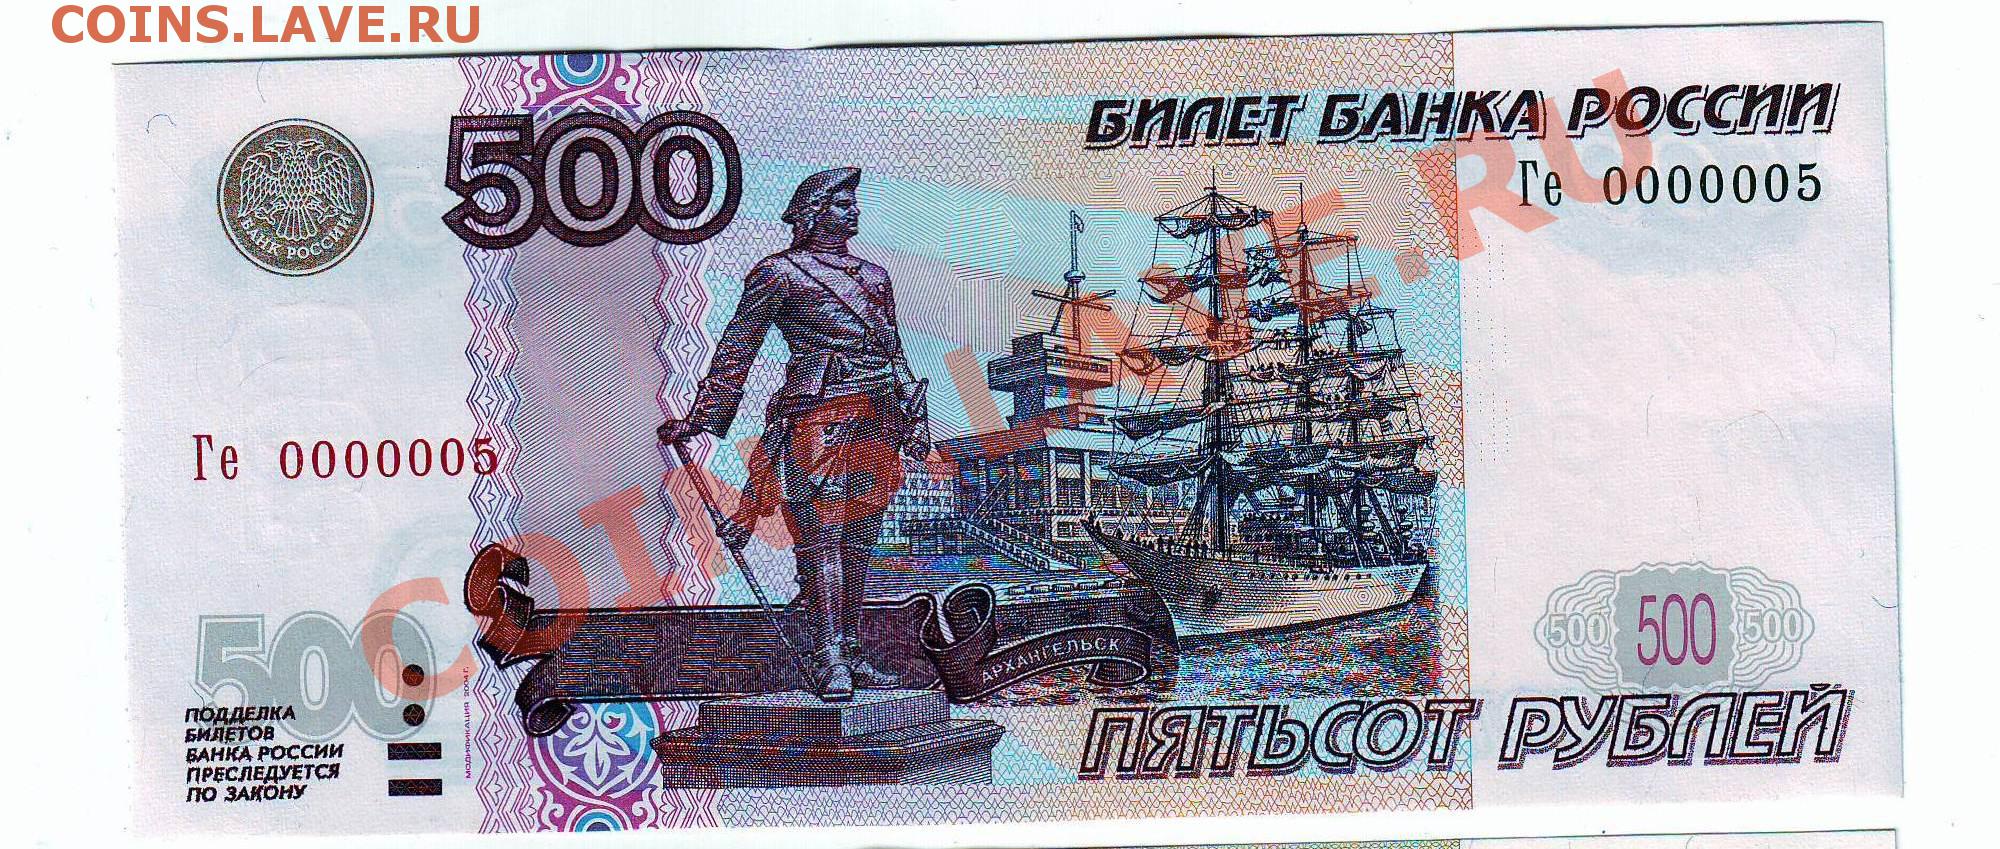 500 рублей 2004. 500 Рублей 2004 года модификации. Билет банка России 500 рублей. Пятьсот рублей 2004 года. Модификация 2004 года 500 руб.